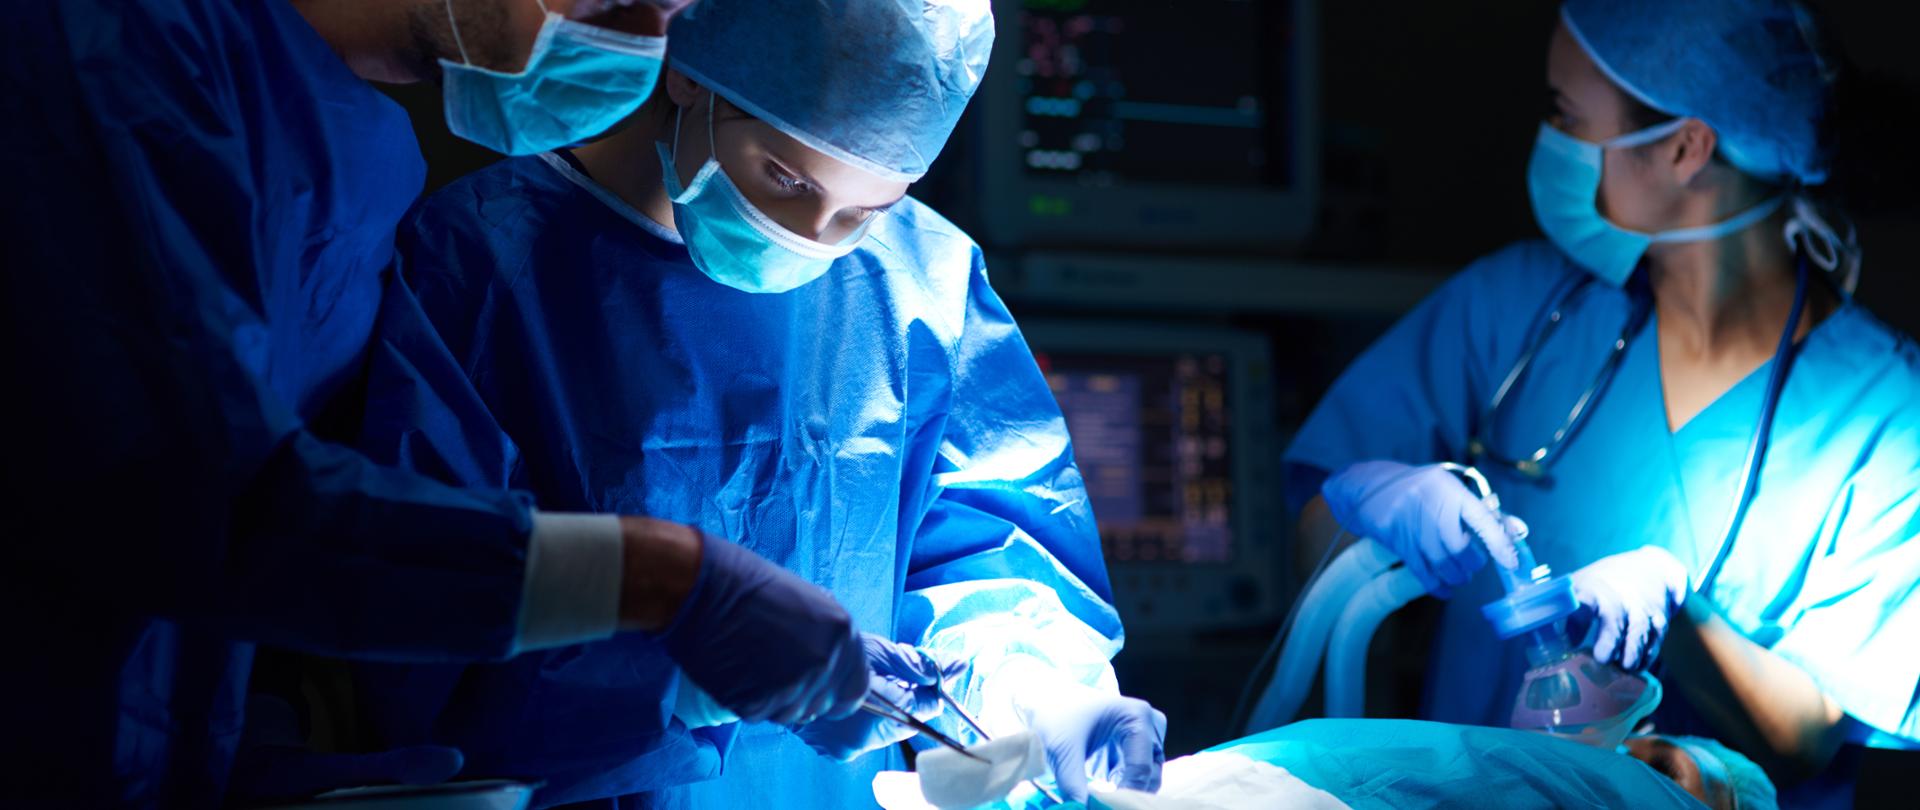 Pomieszczenie, sala operacyjna, lekarze w makach i czepkach z narzędziami w rękach pochylają się nad pacjentem leżącym na stole operacyjnym 